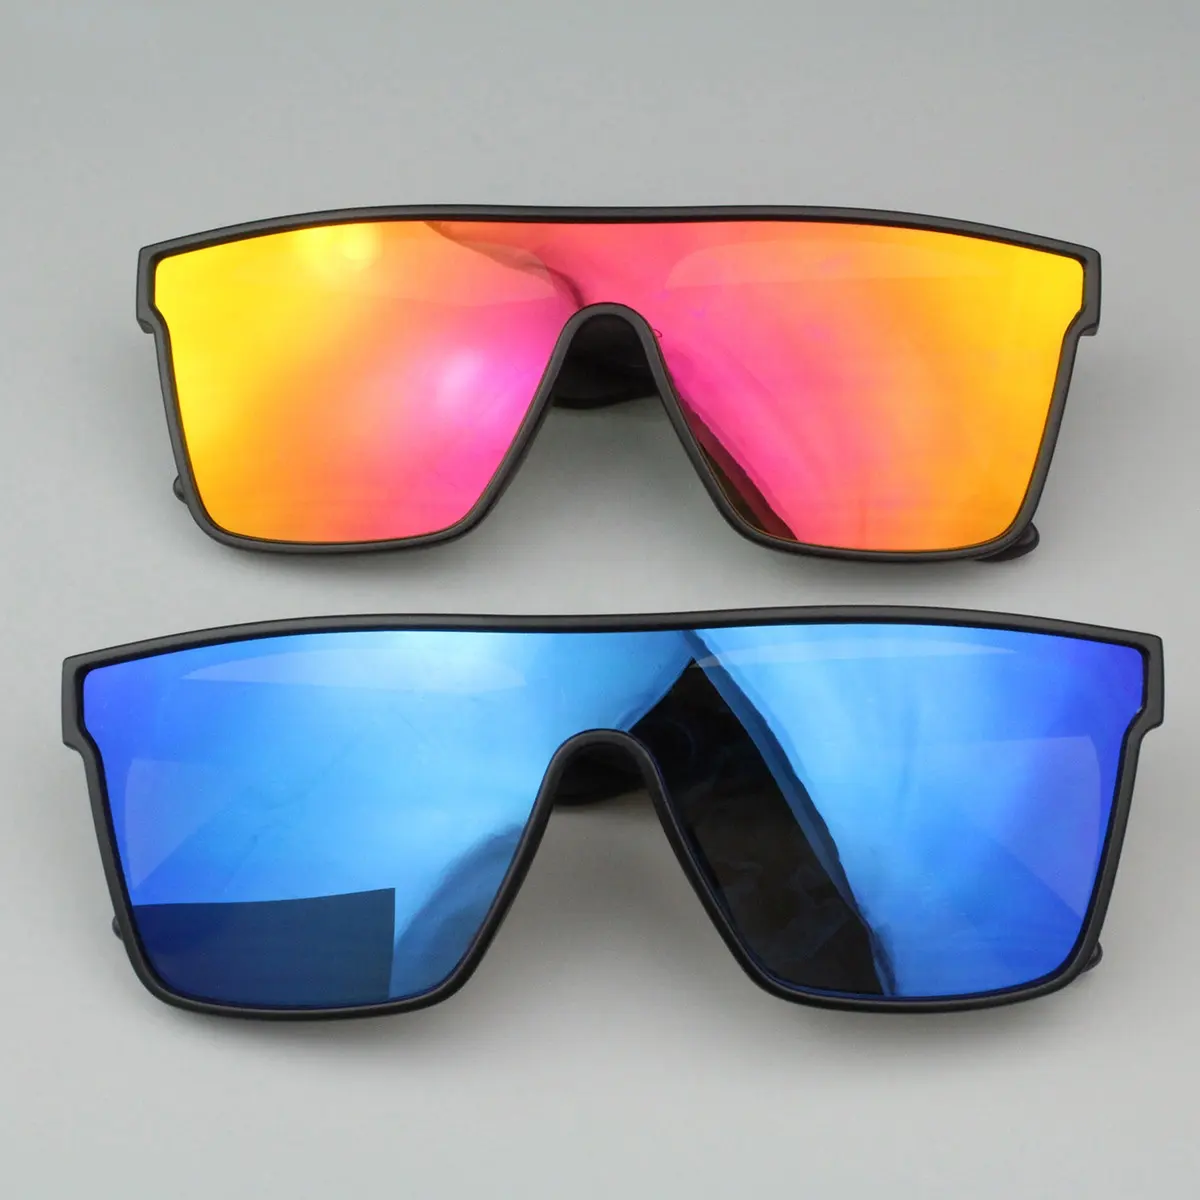 Feirong Neue Sonnenbrillen Ankünfte Benutzer definierte Sports onnen brillen Wind dichte Brillen Logo Einteilige Spiegel linse Sport PC Herren